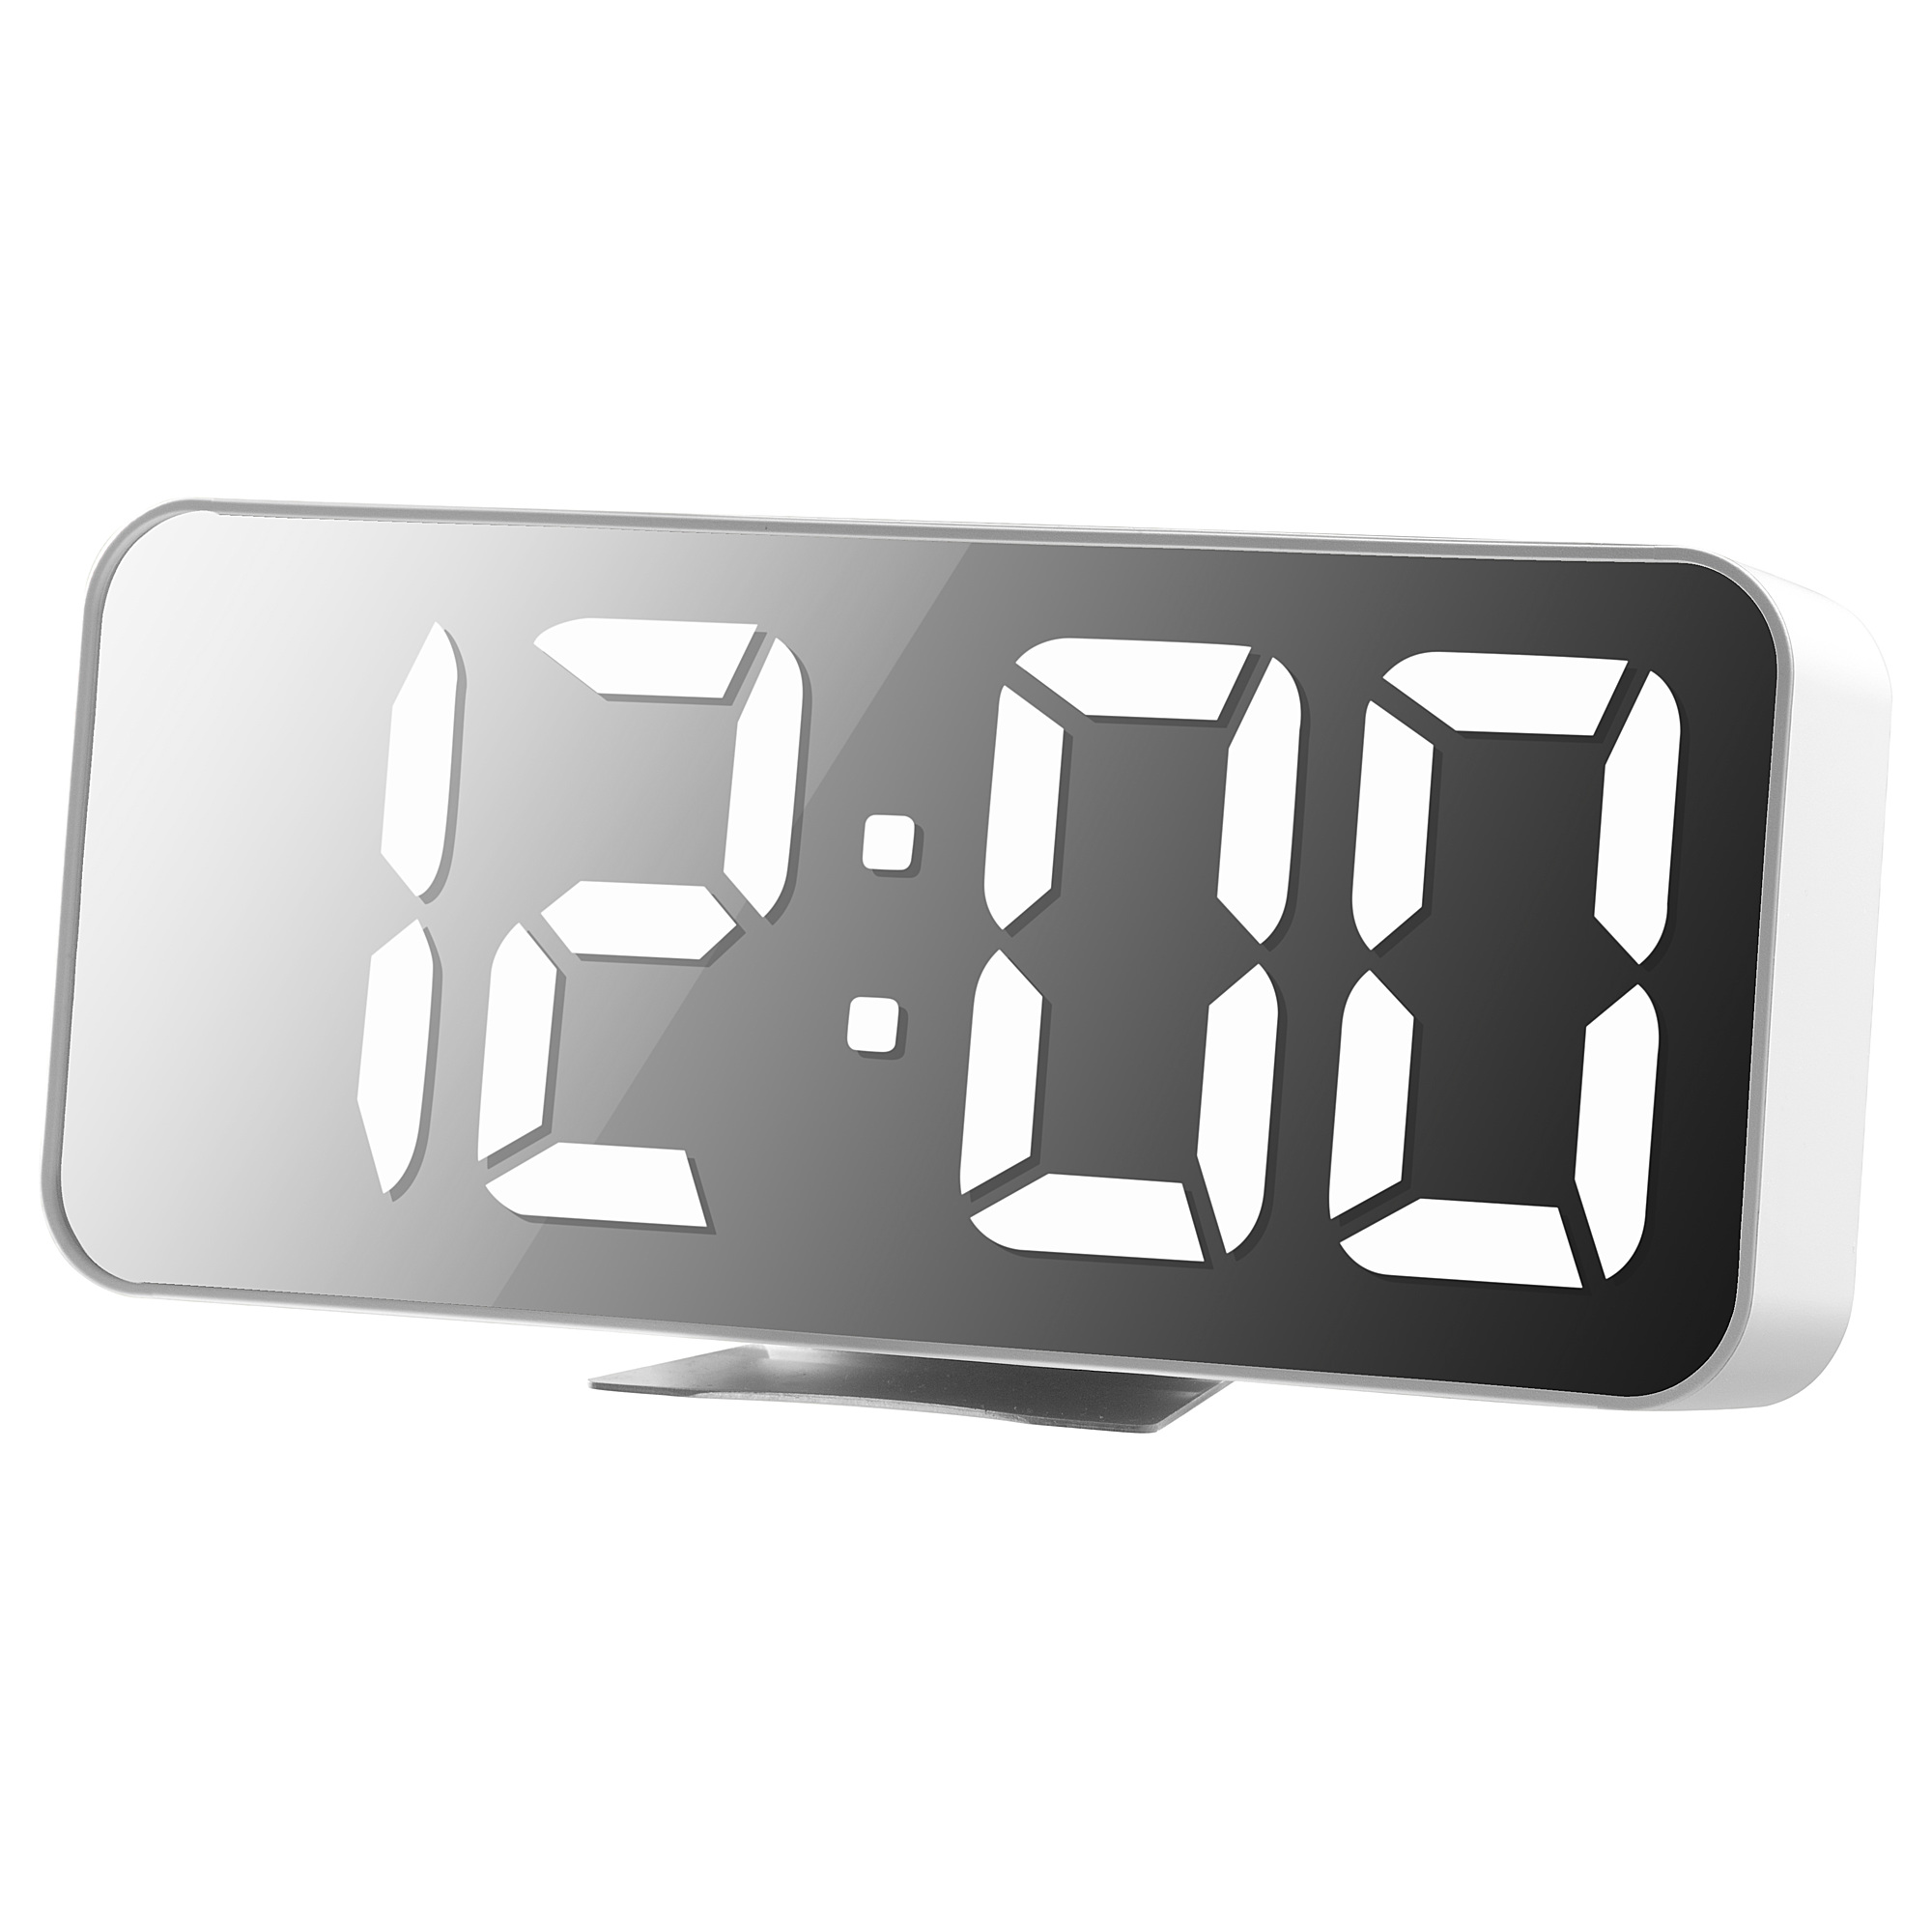 NOLLNING clock/thermometer/alarm